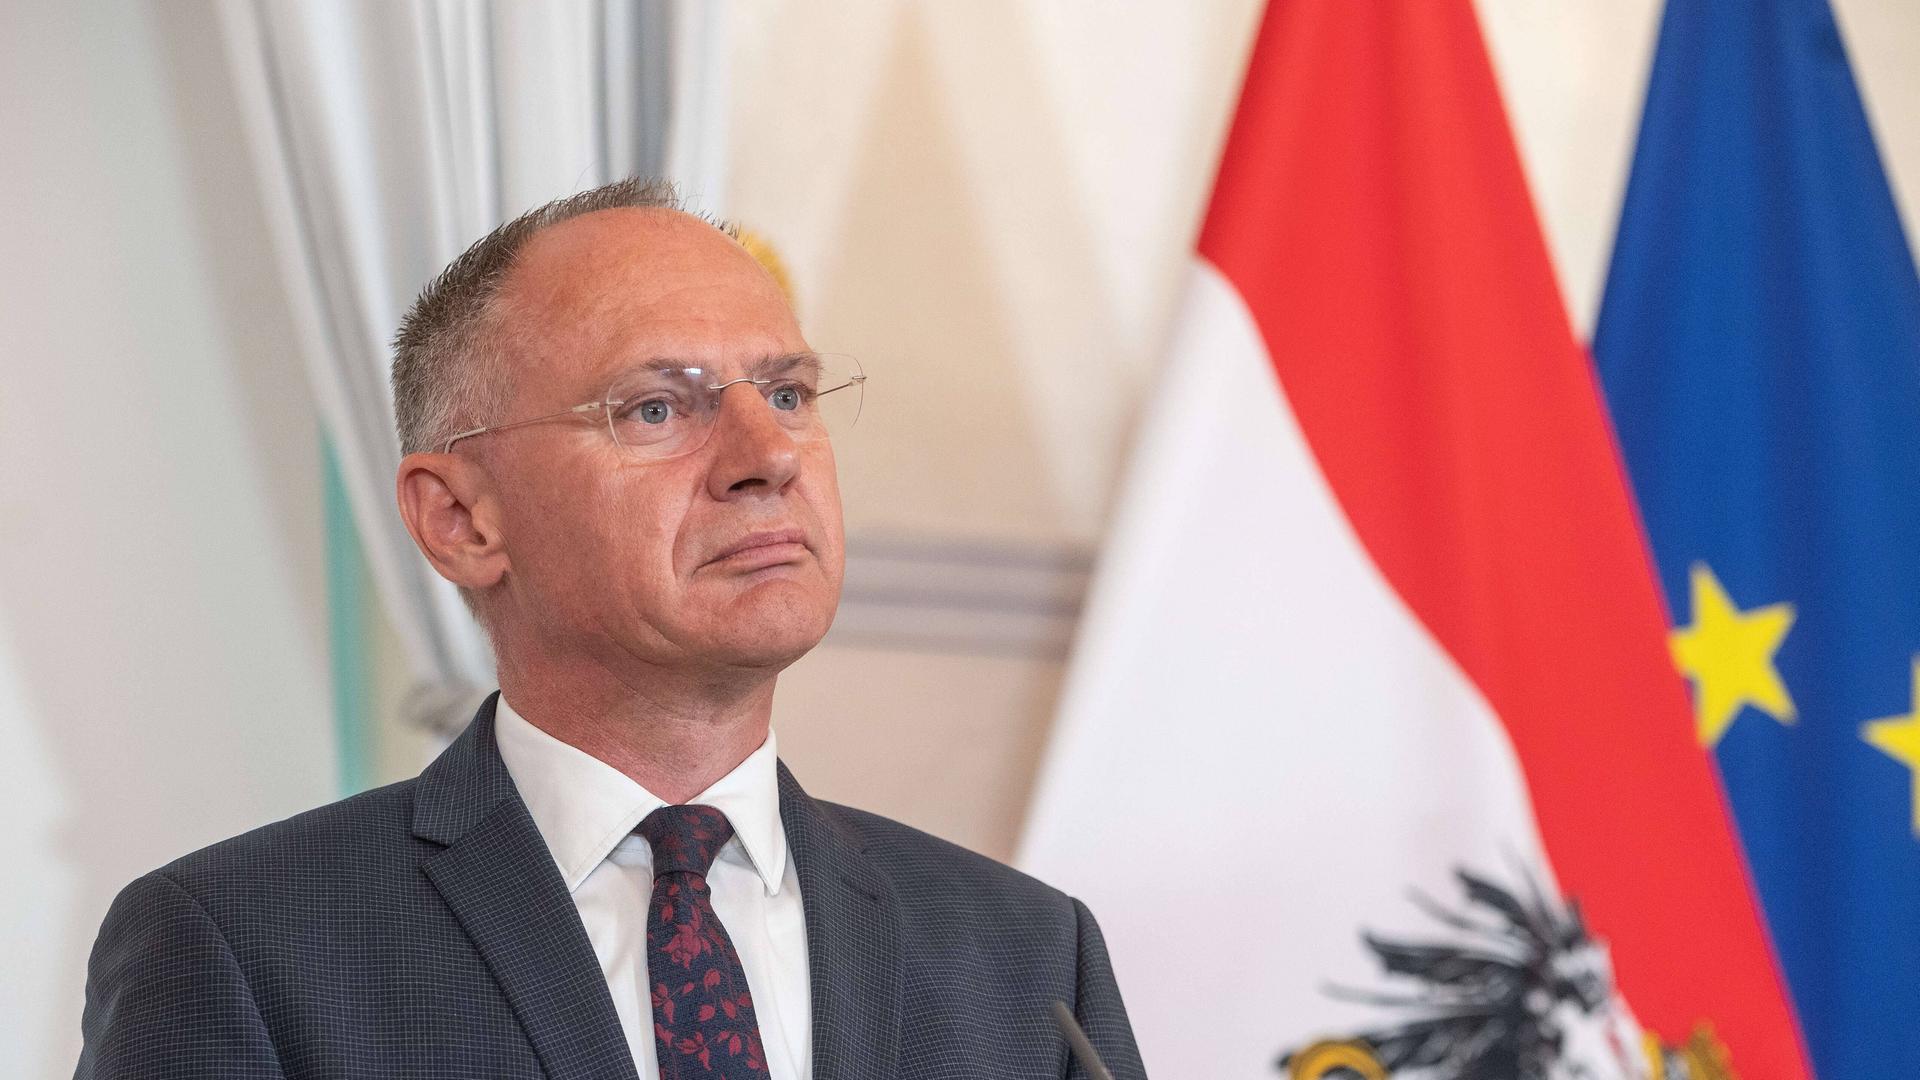 Österreichs Innenminister Gerhard Karner (OEVP) steht vor einer österreichischen- und einer EU-Fahne.